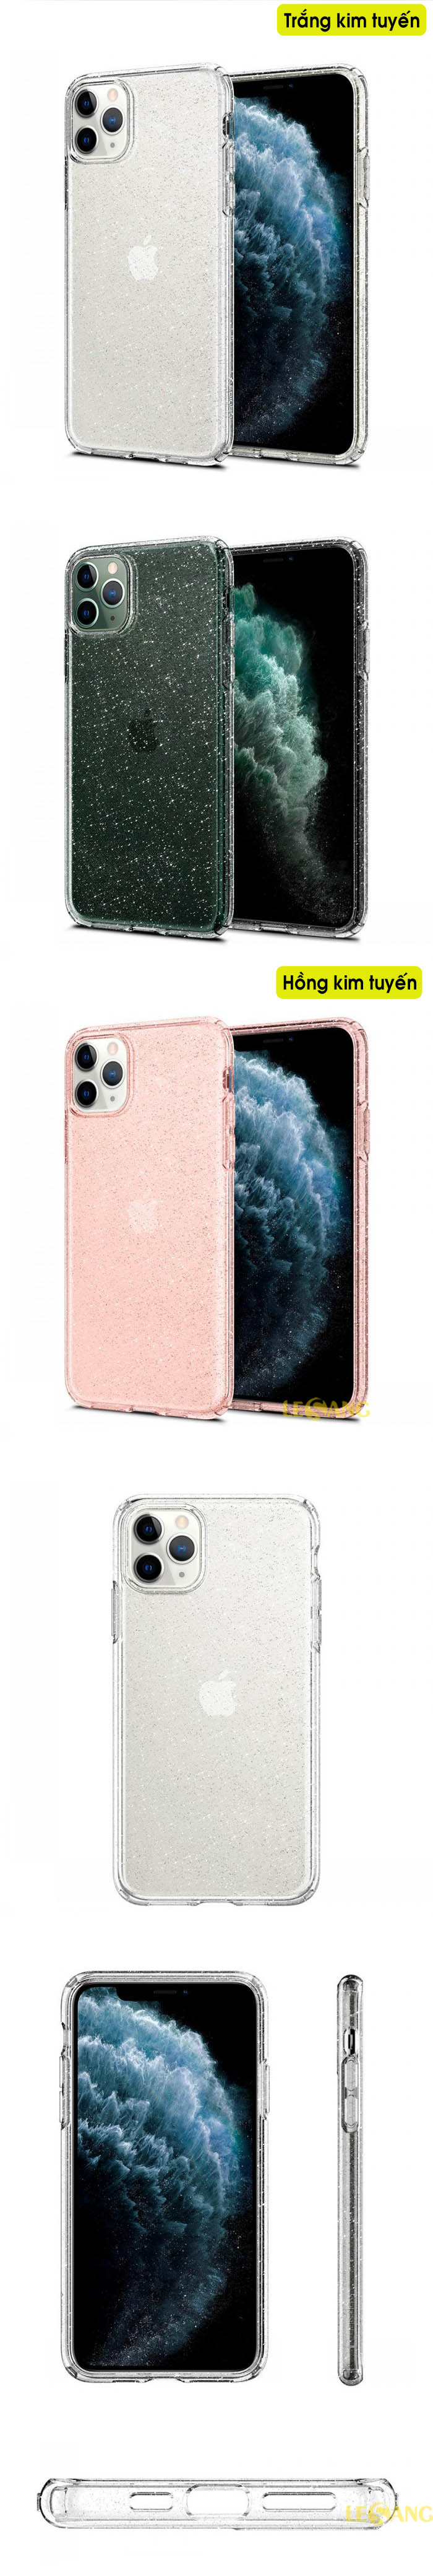 Ốp lưng iPhone 11 Pro Max Spigen Liquid Crystal Glitter 57